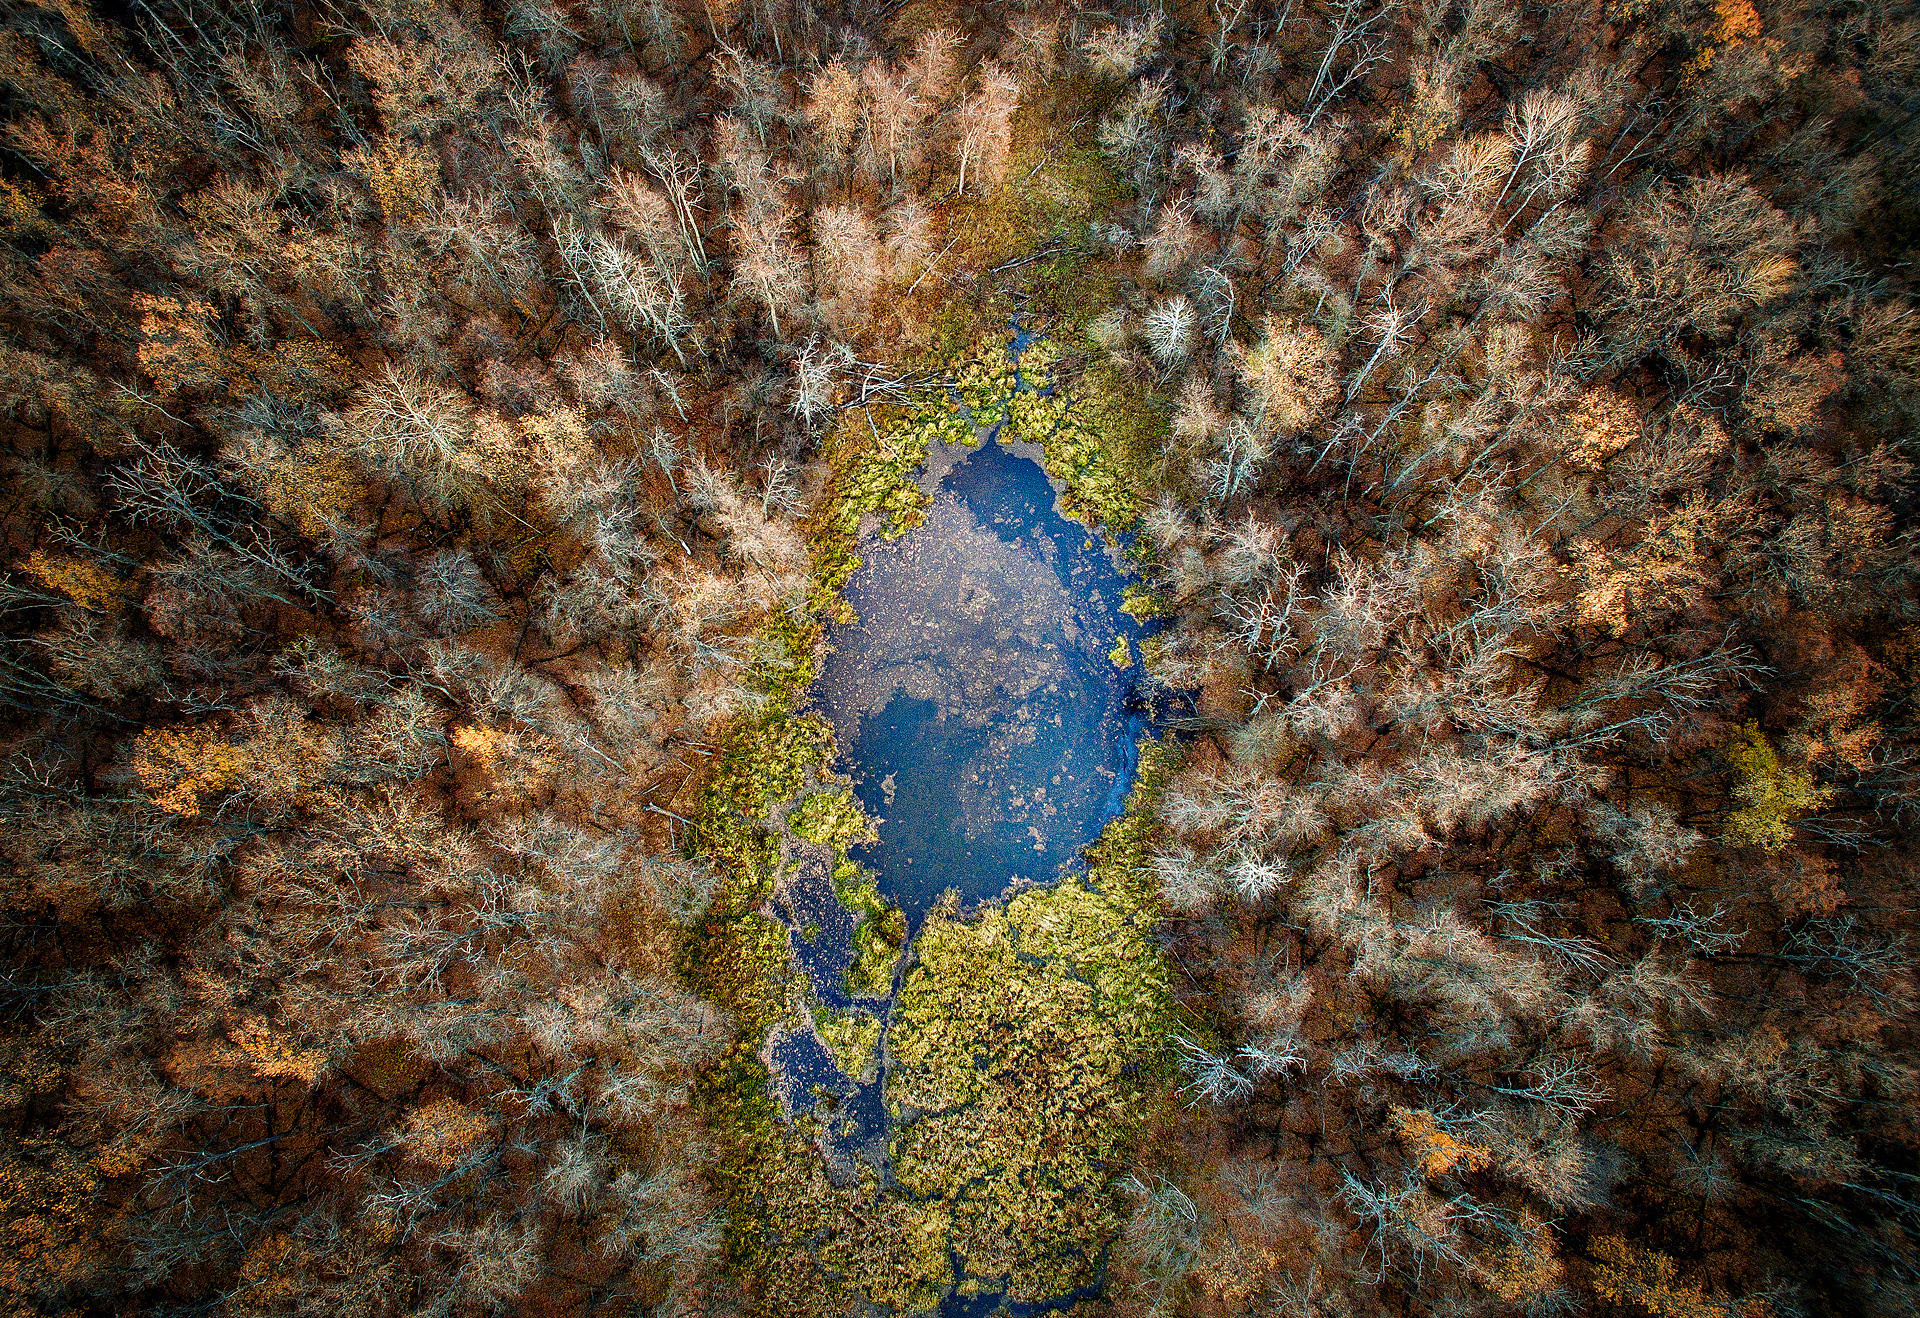 Лесное озеро. Фото: Константин Толоконников, участник конкурса РГО 